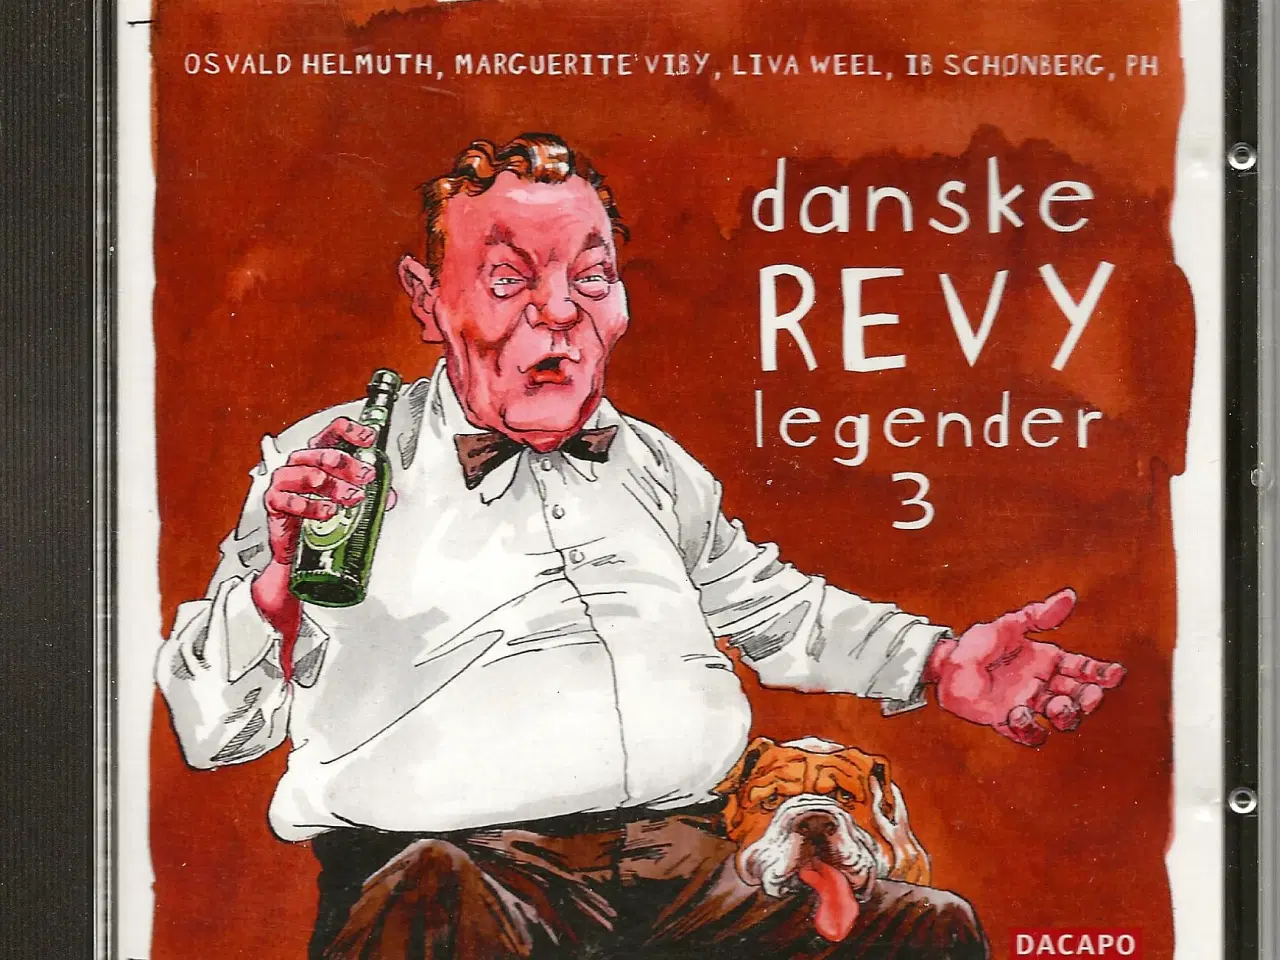 Billede 15 - Danske revy legender 1 - 3 (3 CD'er)  60 numre